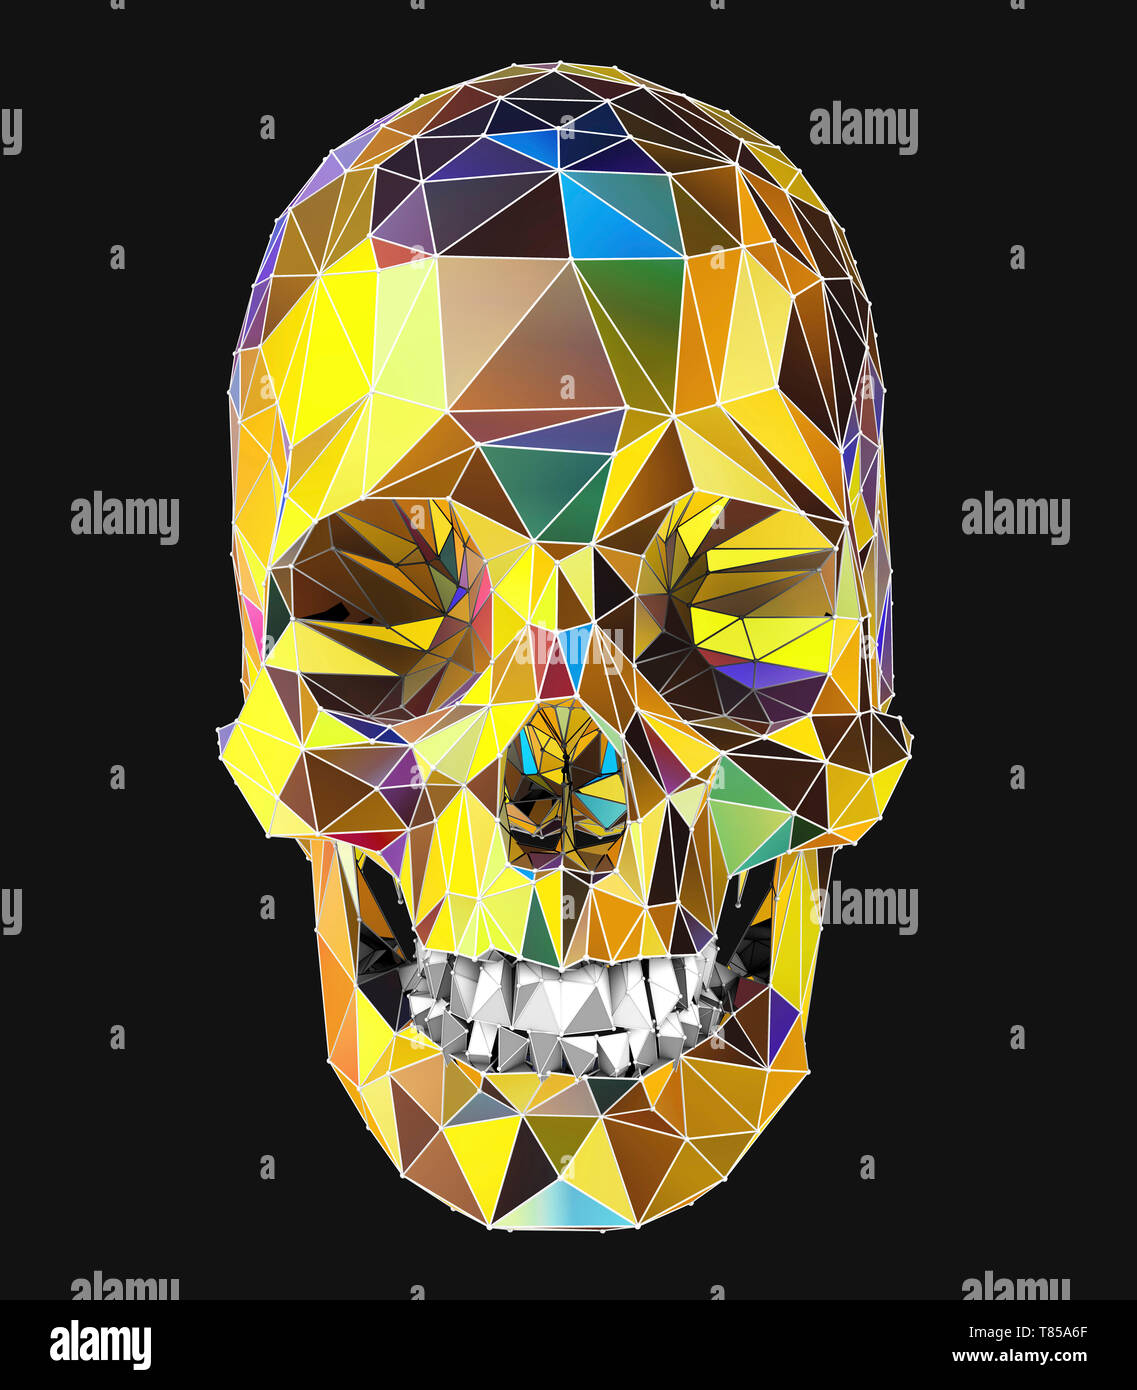 Human skull, illustration Stock Photo